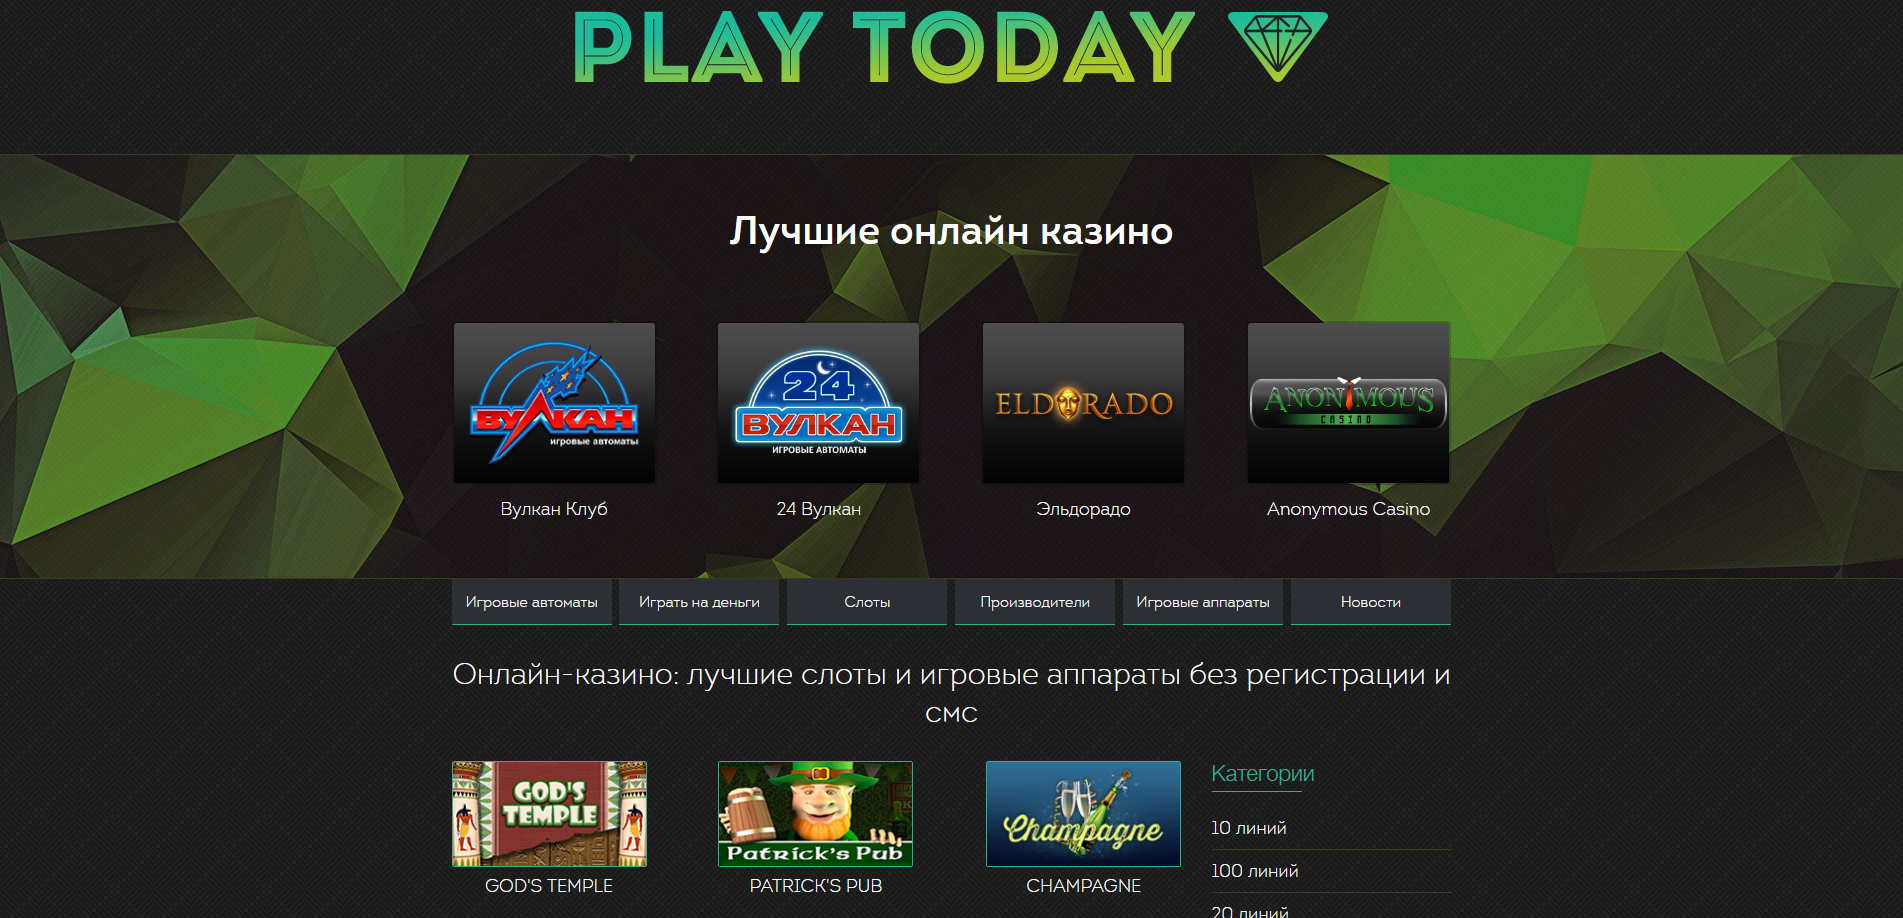 Яндекс игровые аппараты слоты играть бесплатно резидент